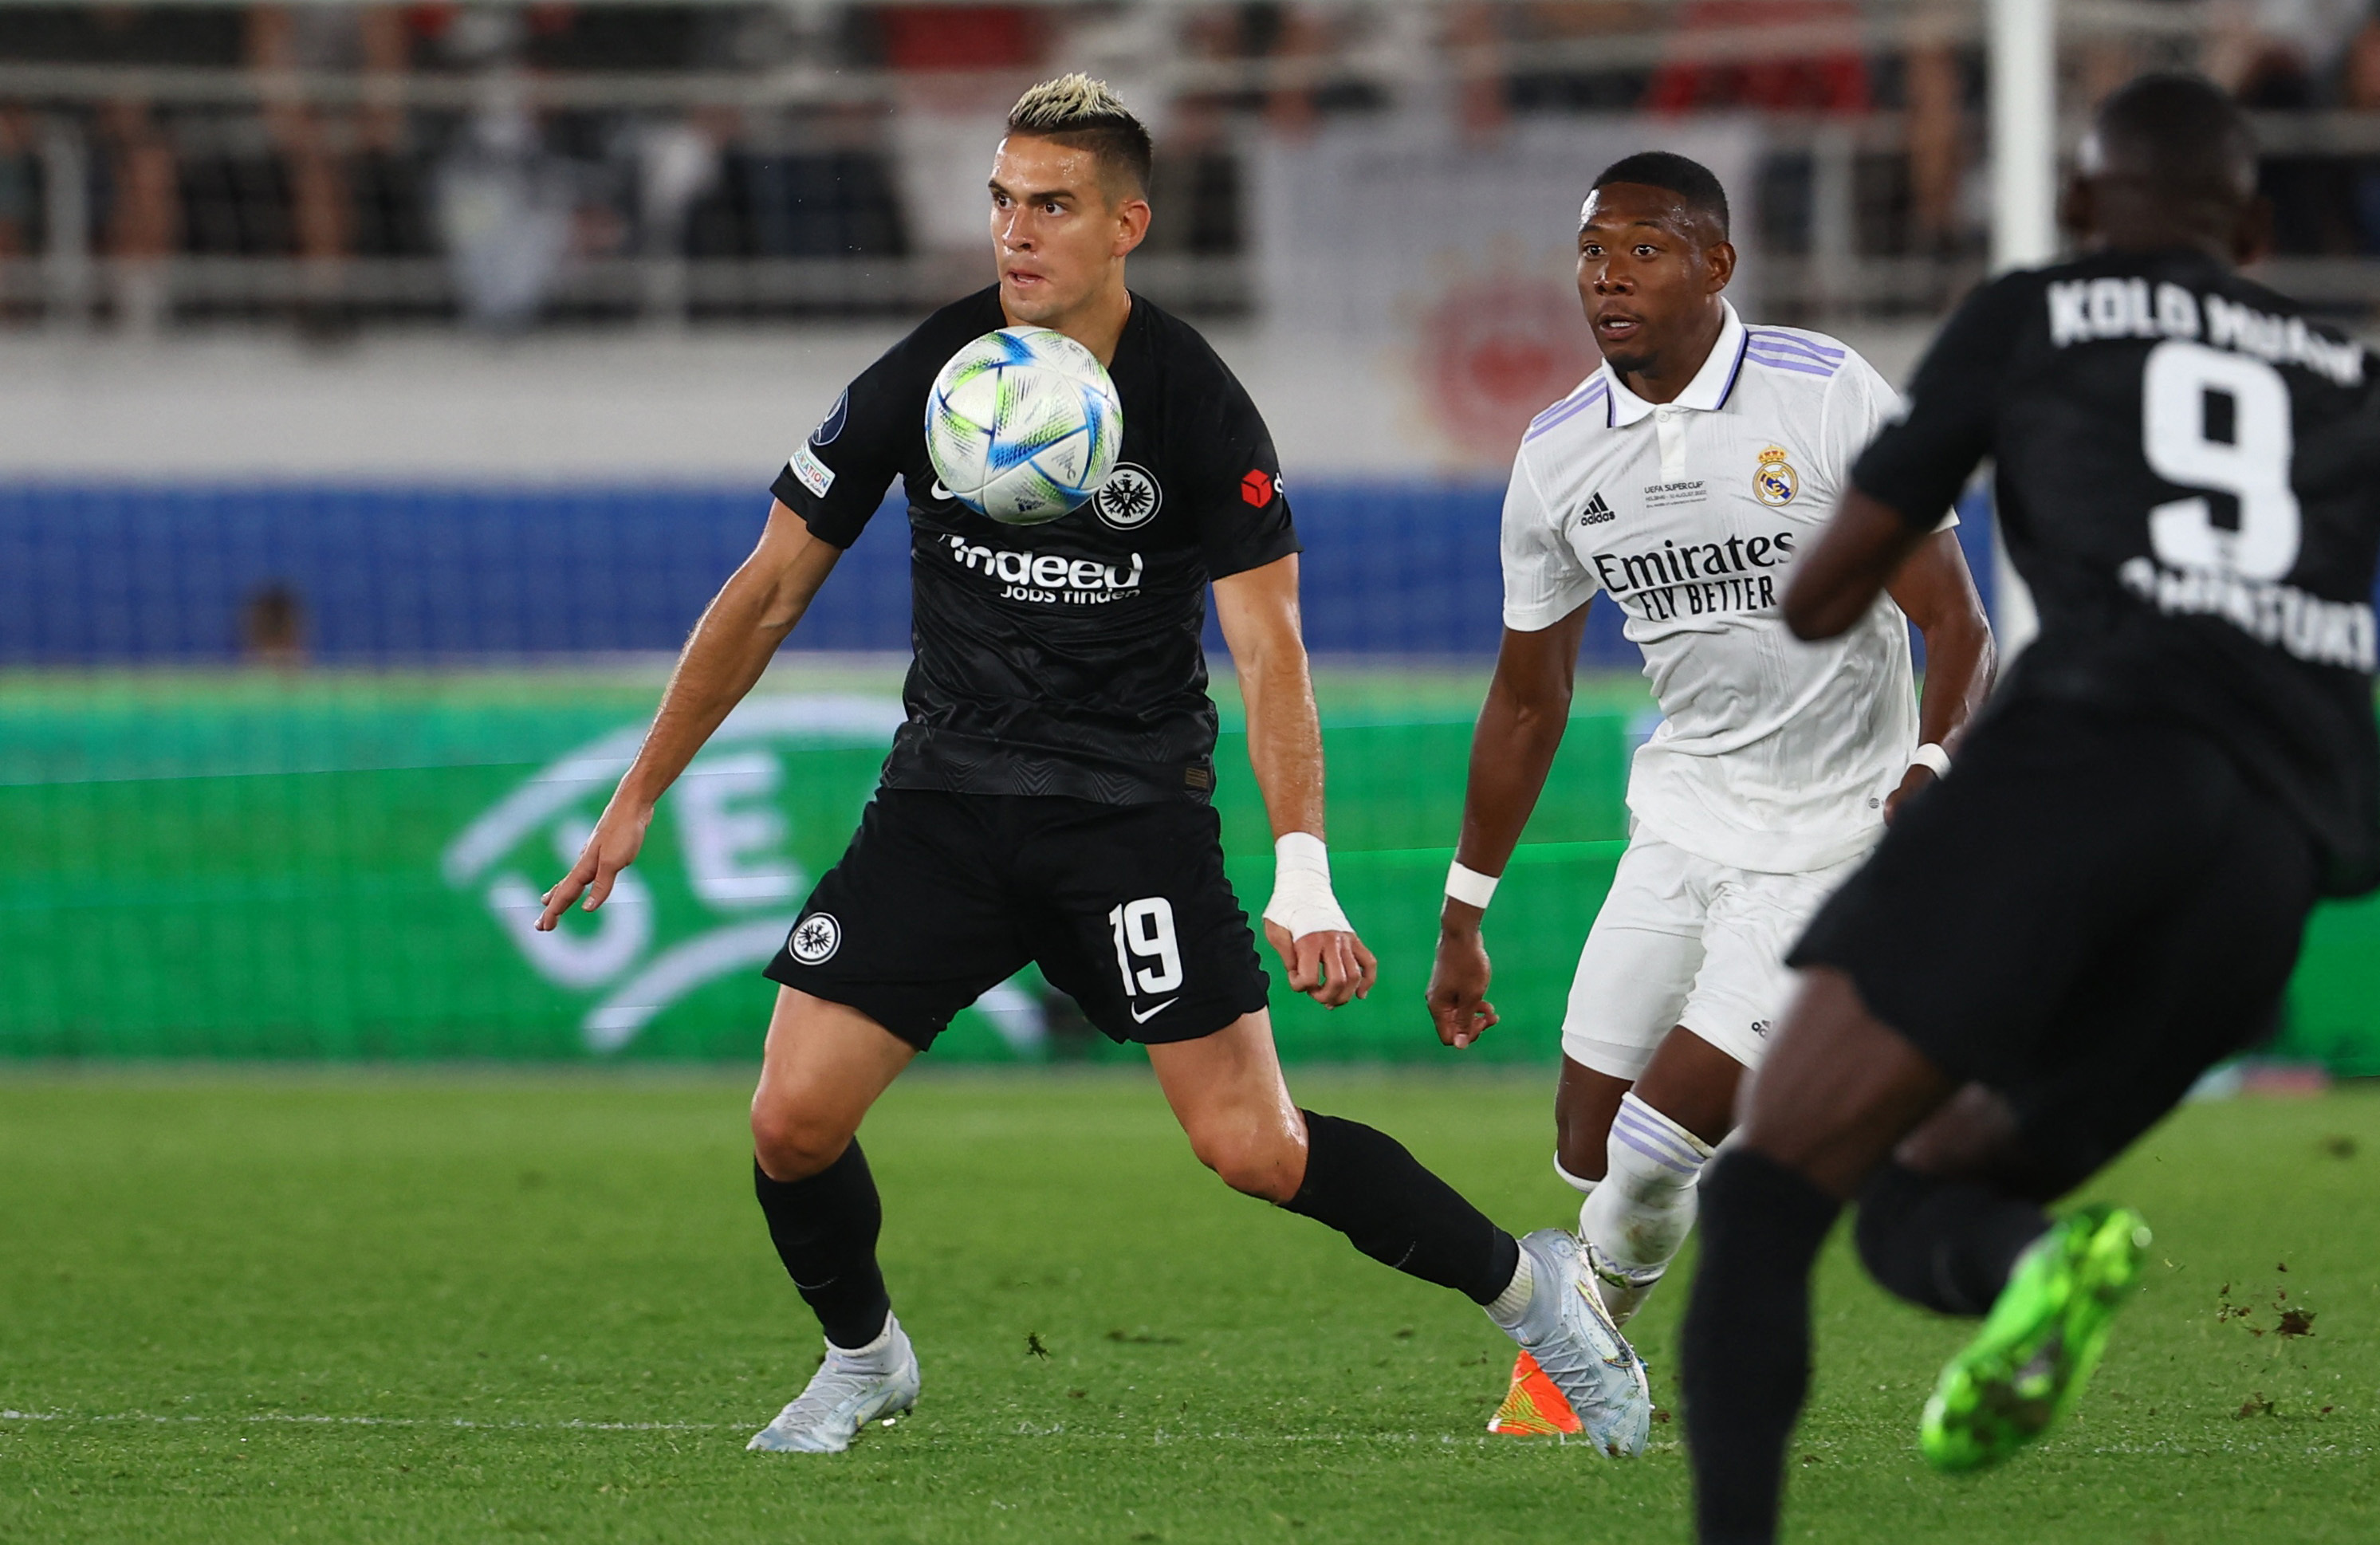 Santos Borré no pudo brillar con el Eintracht Frankfurt y perdió la final de la Supercopa de la UEFA frente al Real Madrid